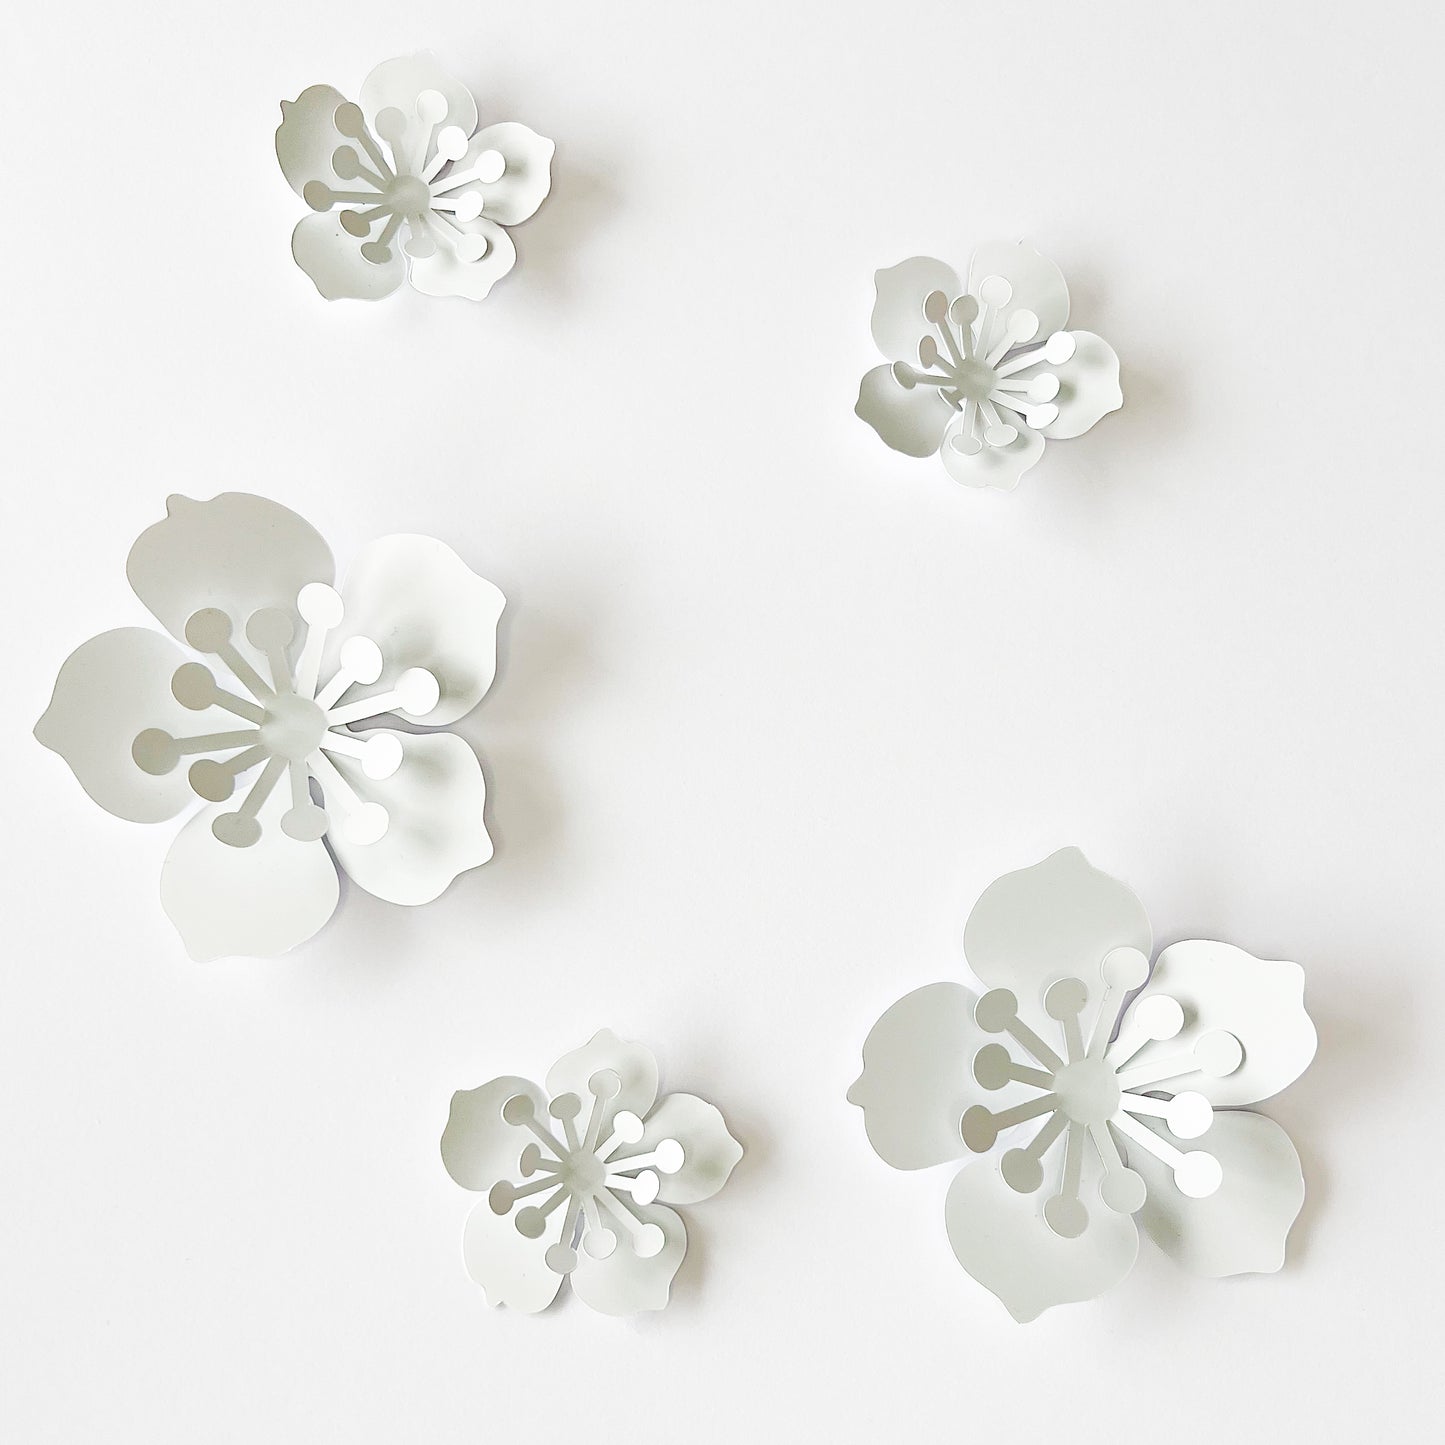 Stickers Fleurs 3D blanche capucine en relief, decoration murale adhesive